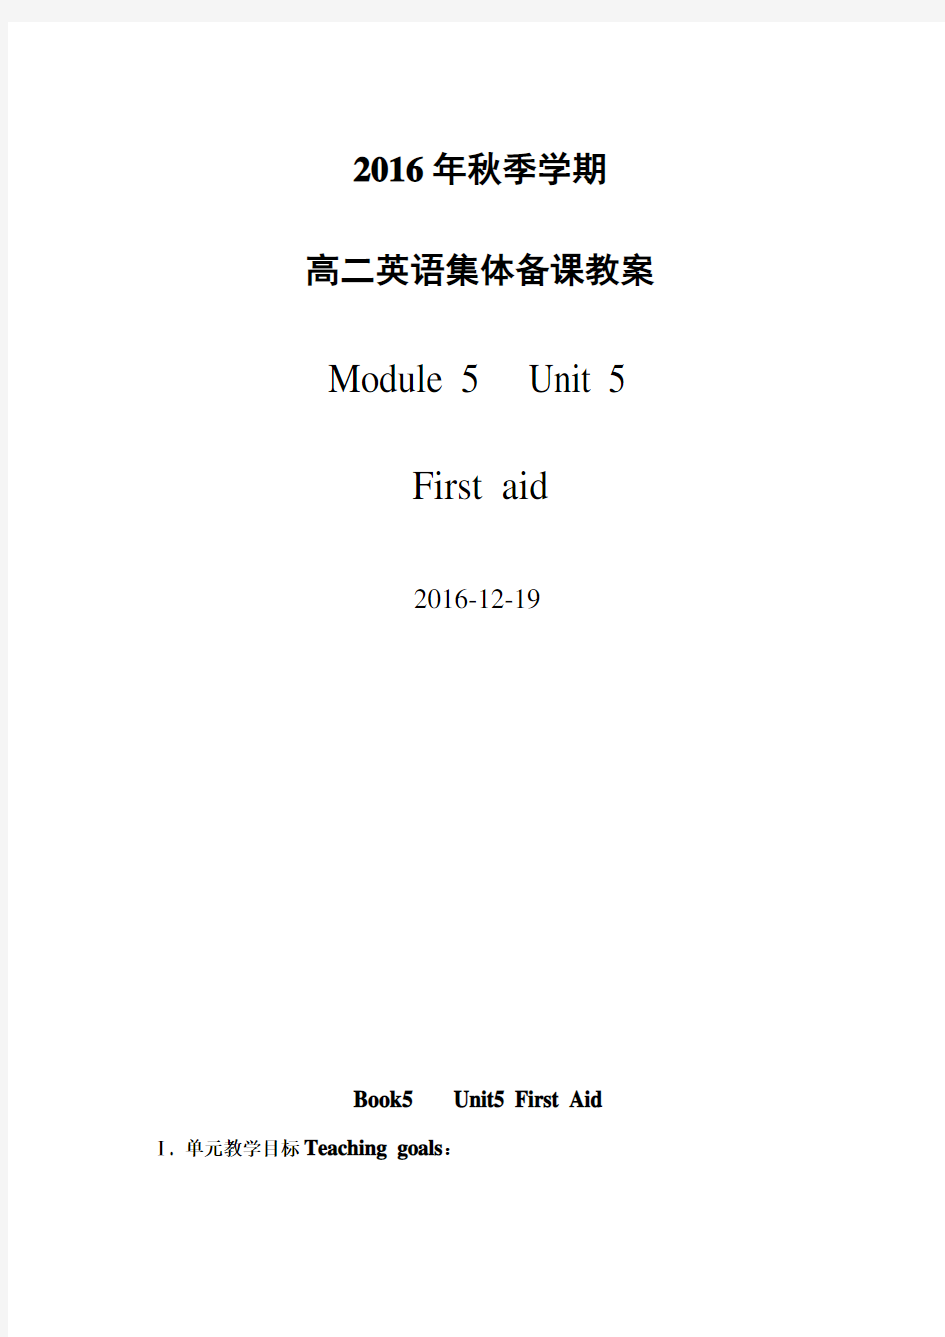 必修五unit-5 first aid 集体备课